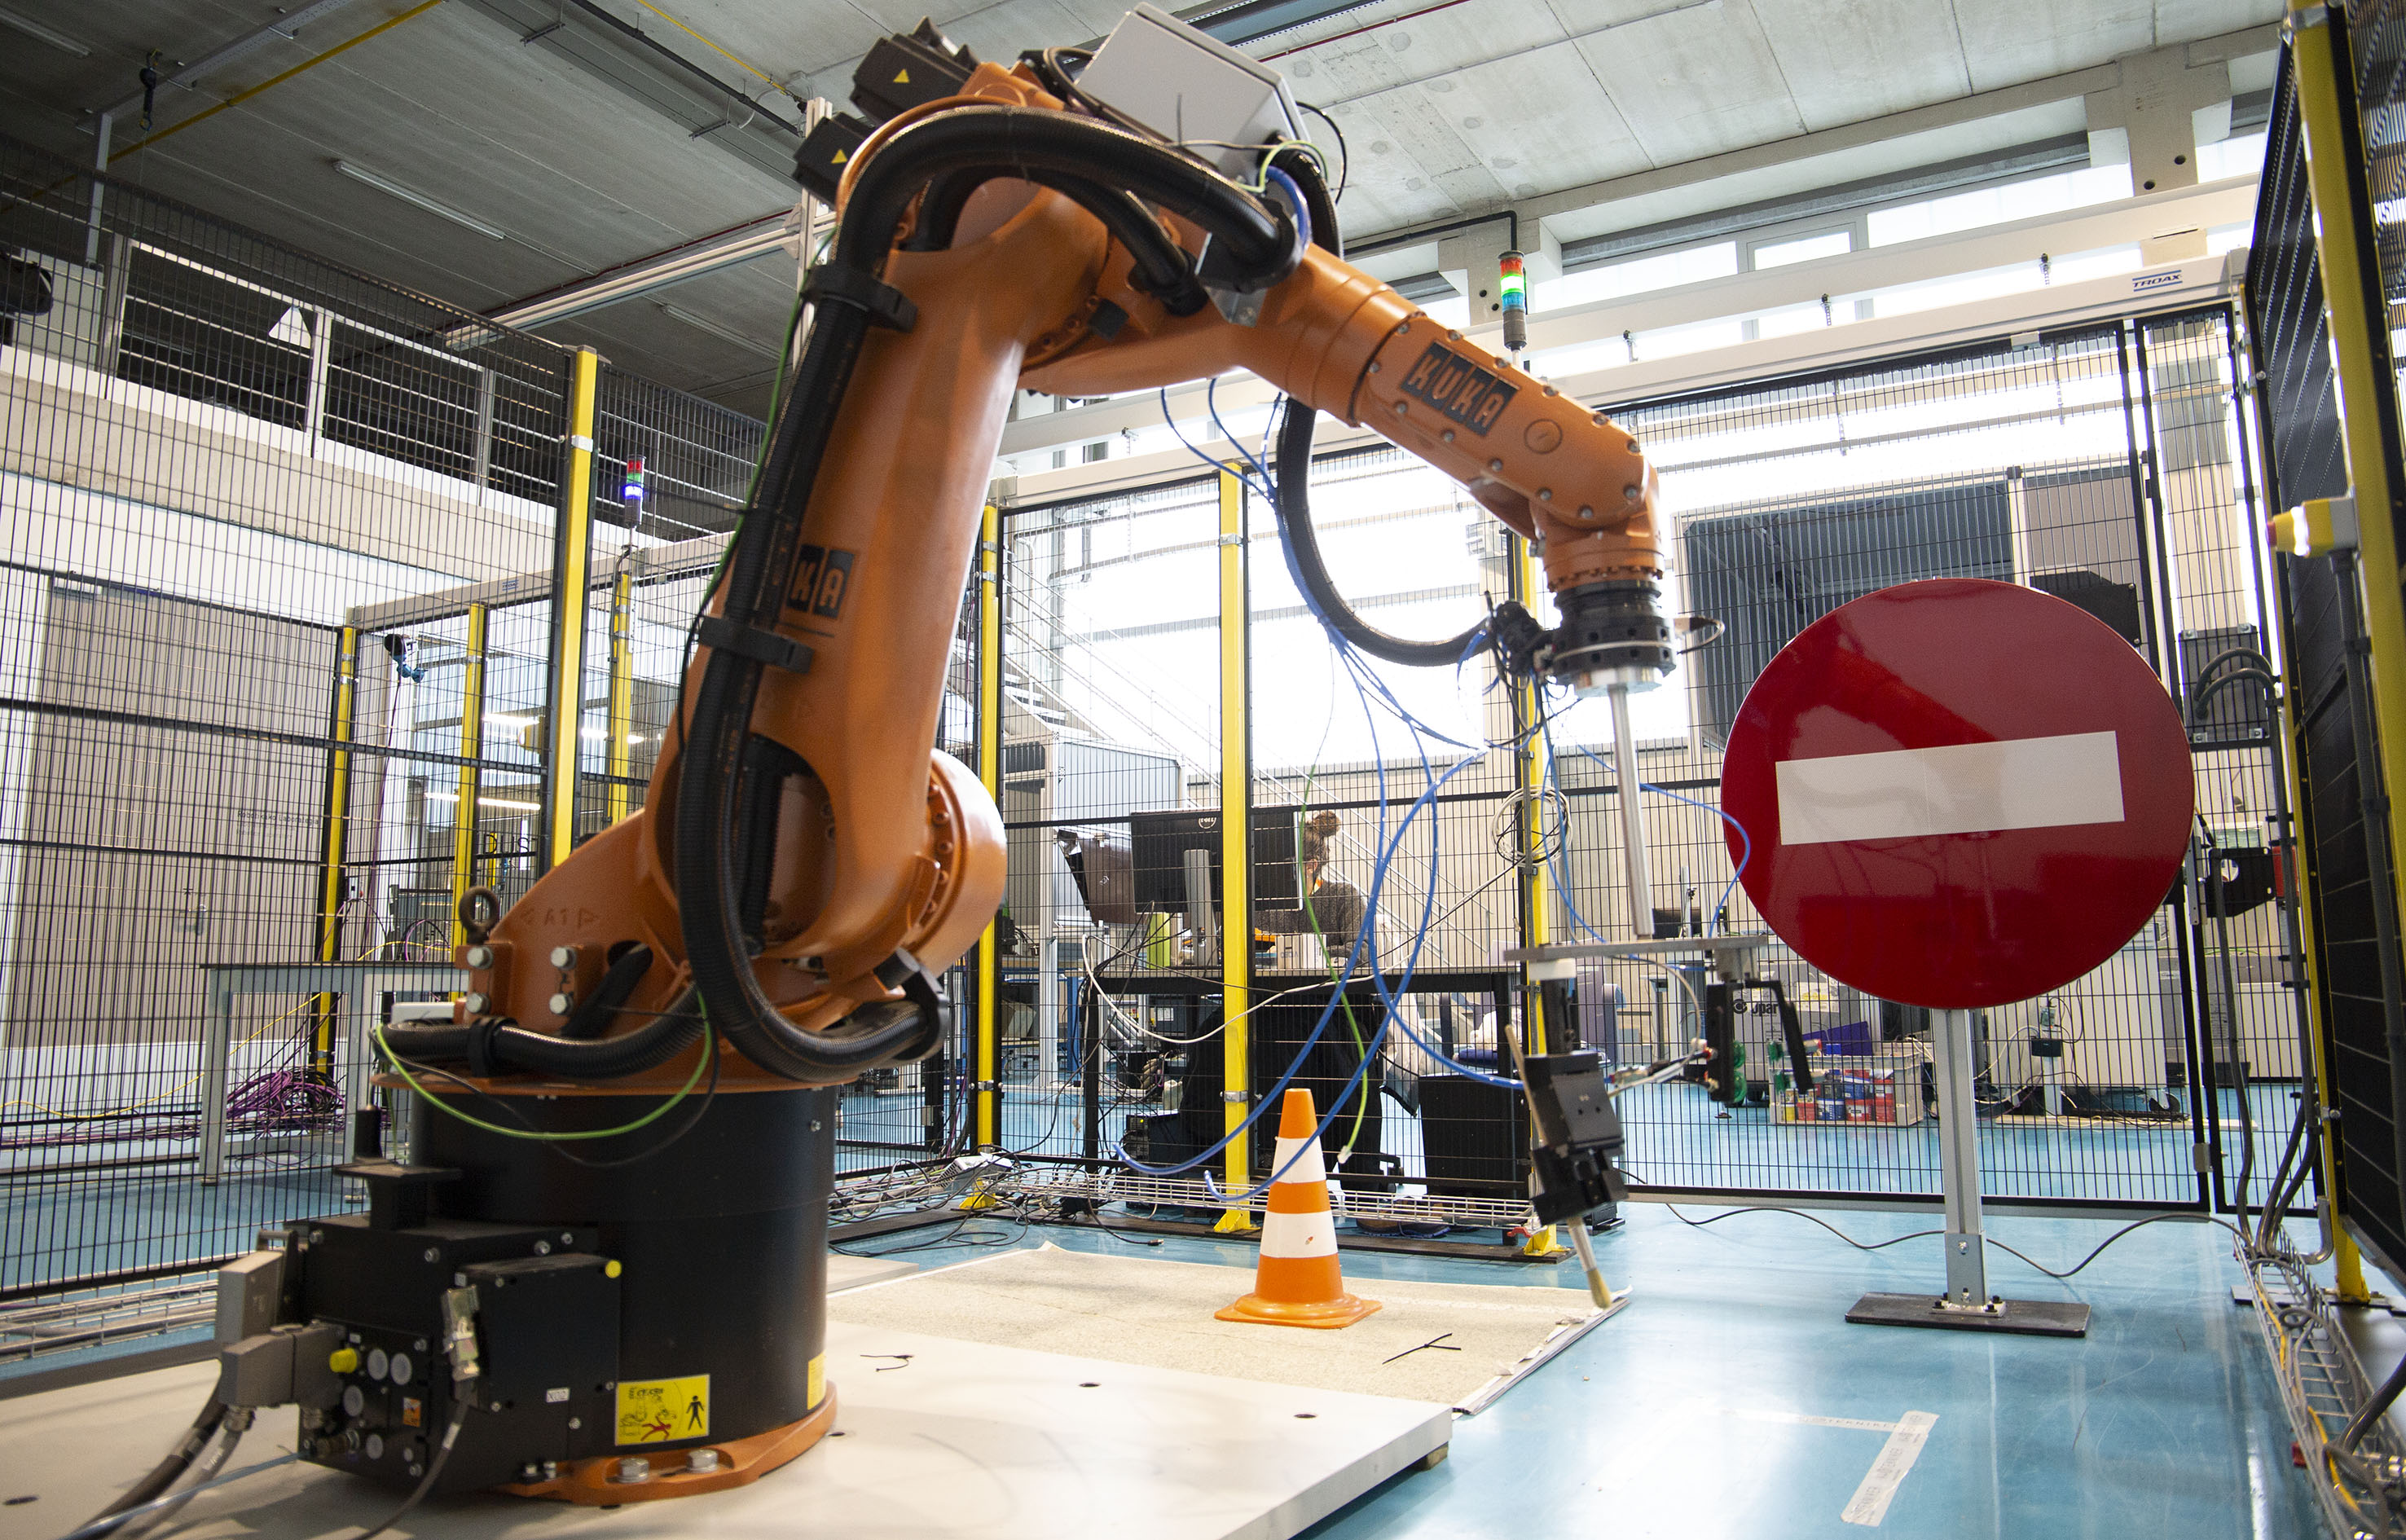 Tekniker desarrollará una plataforma robótica multipropósito para mantenimiento en carretera